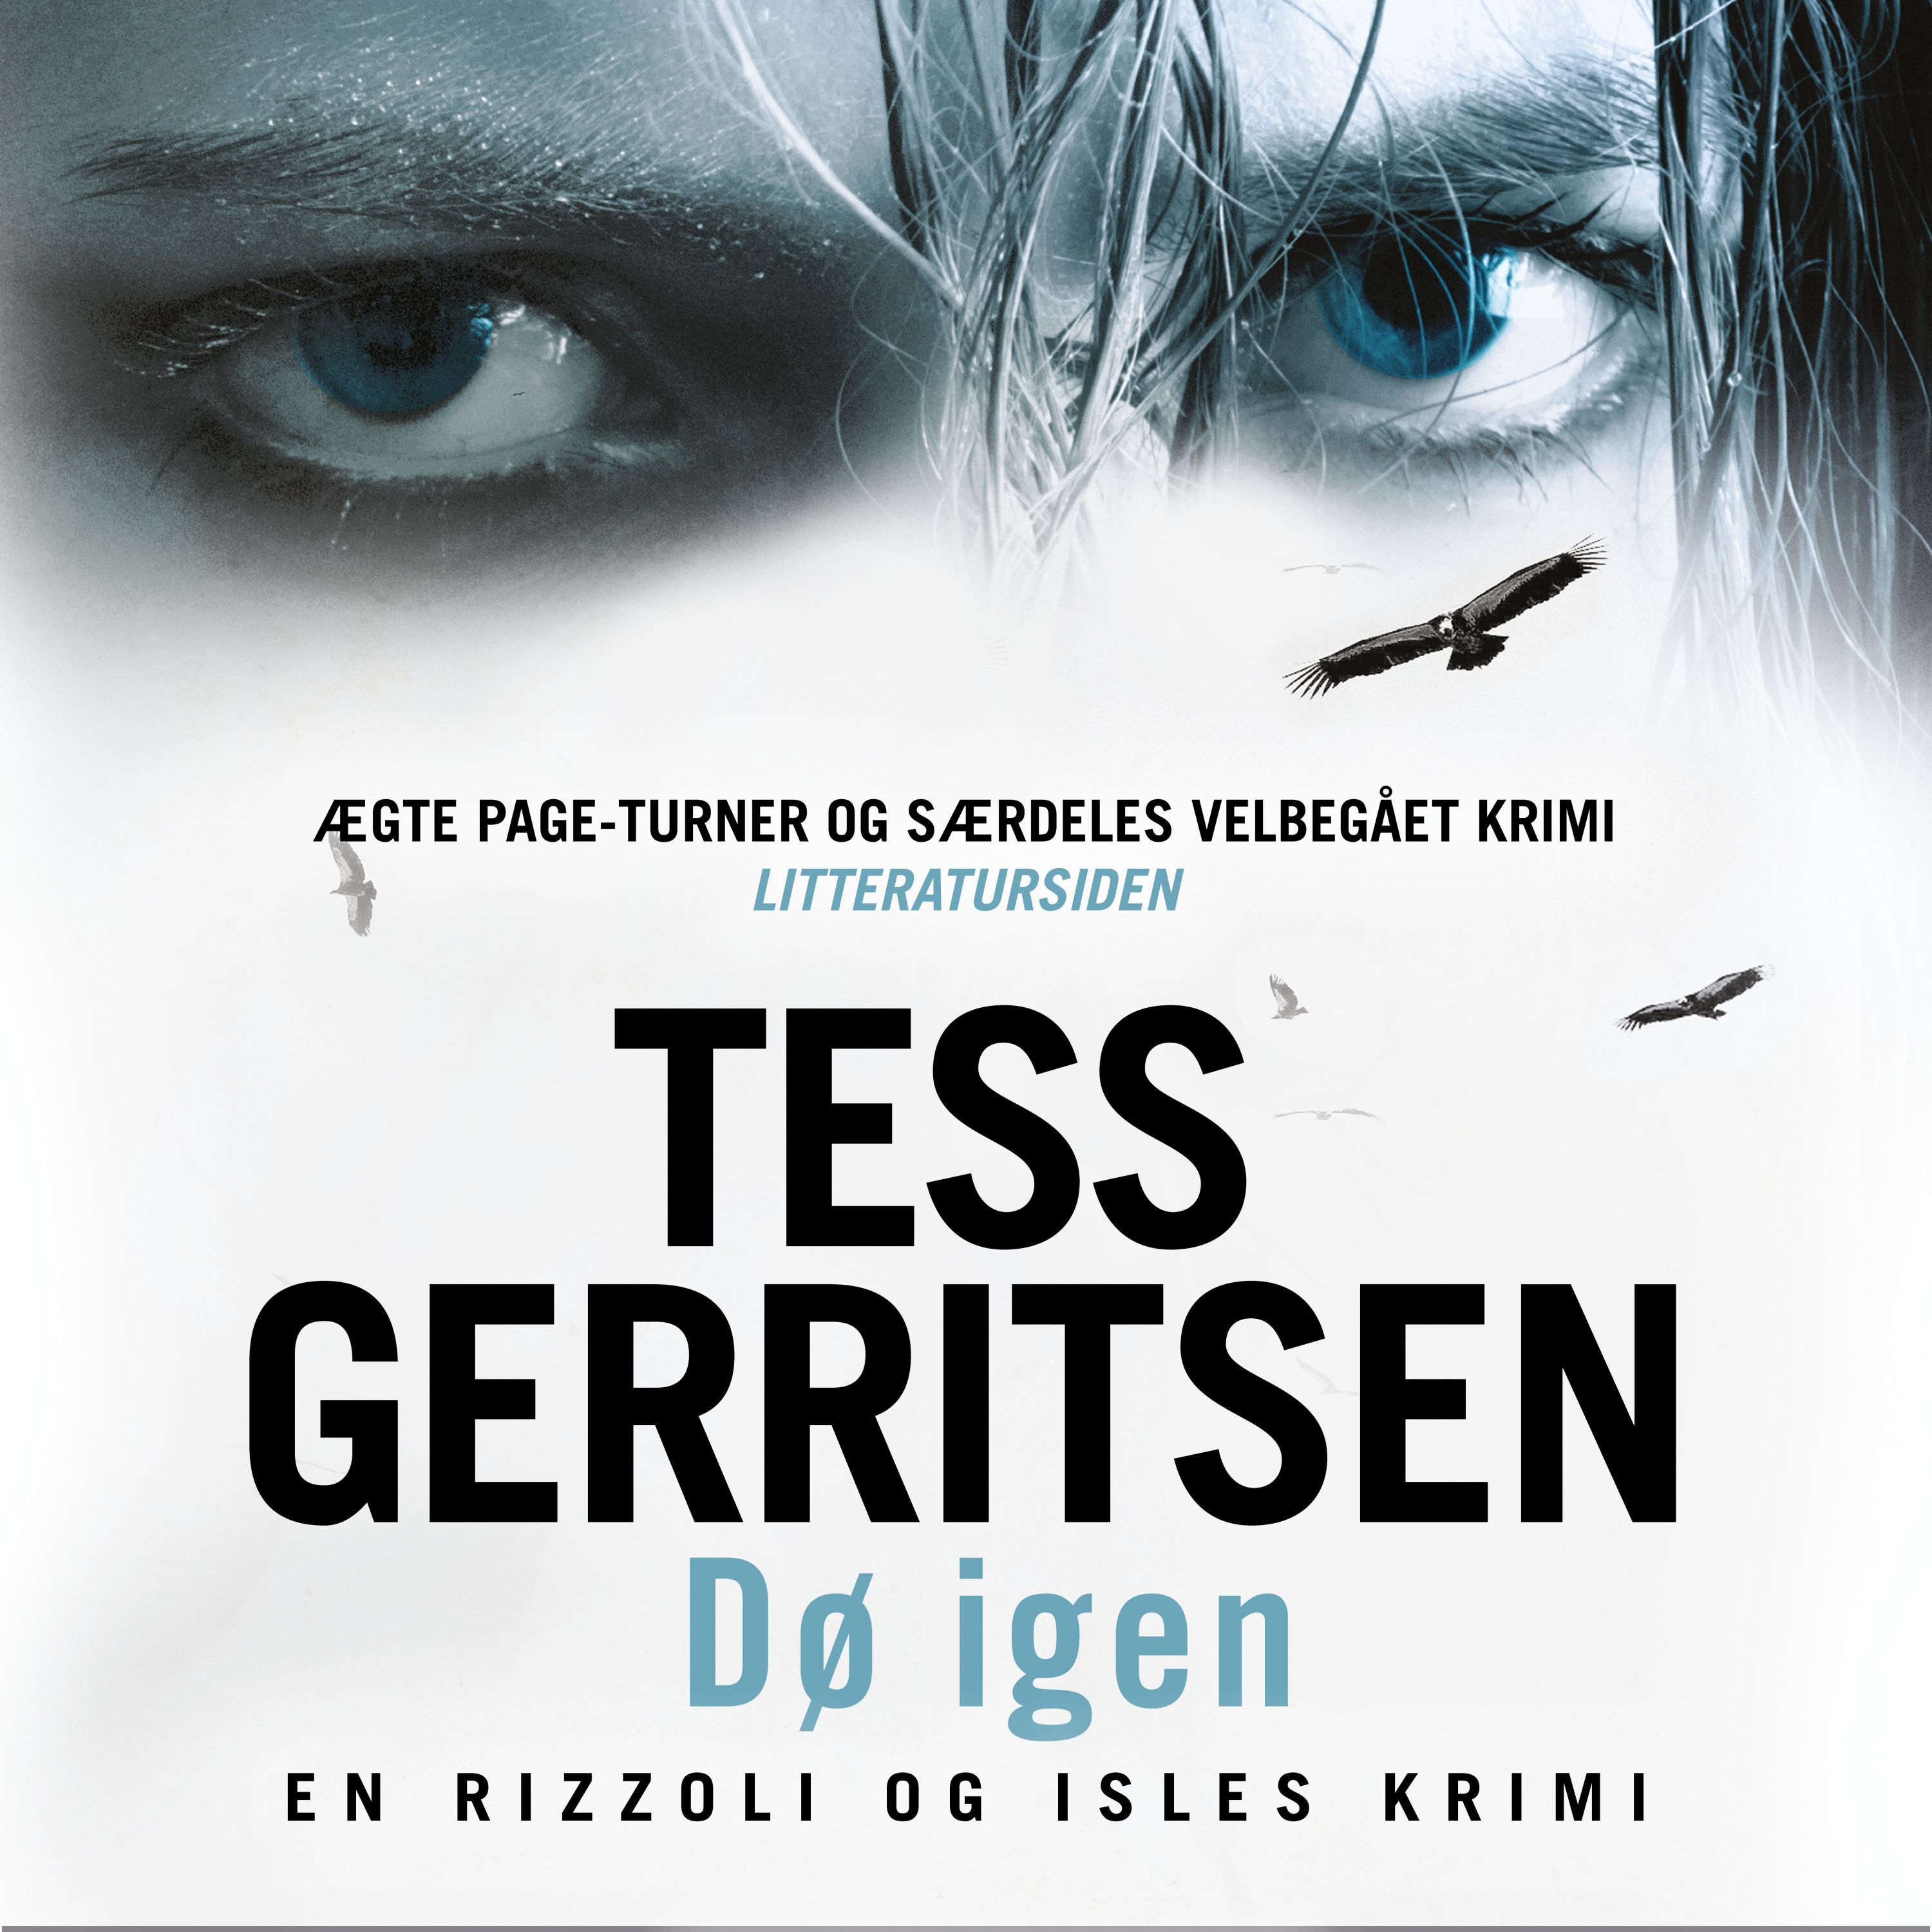 Dø igen, lydbog af Tess Gerritsen